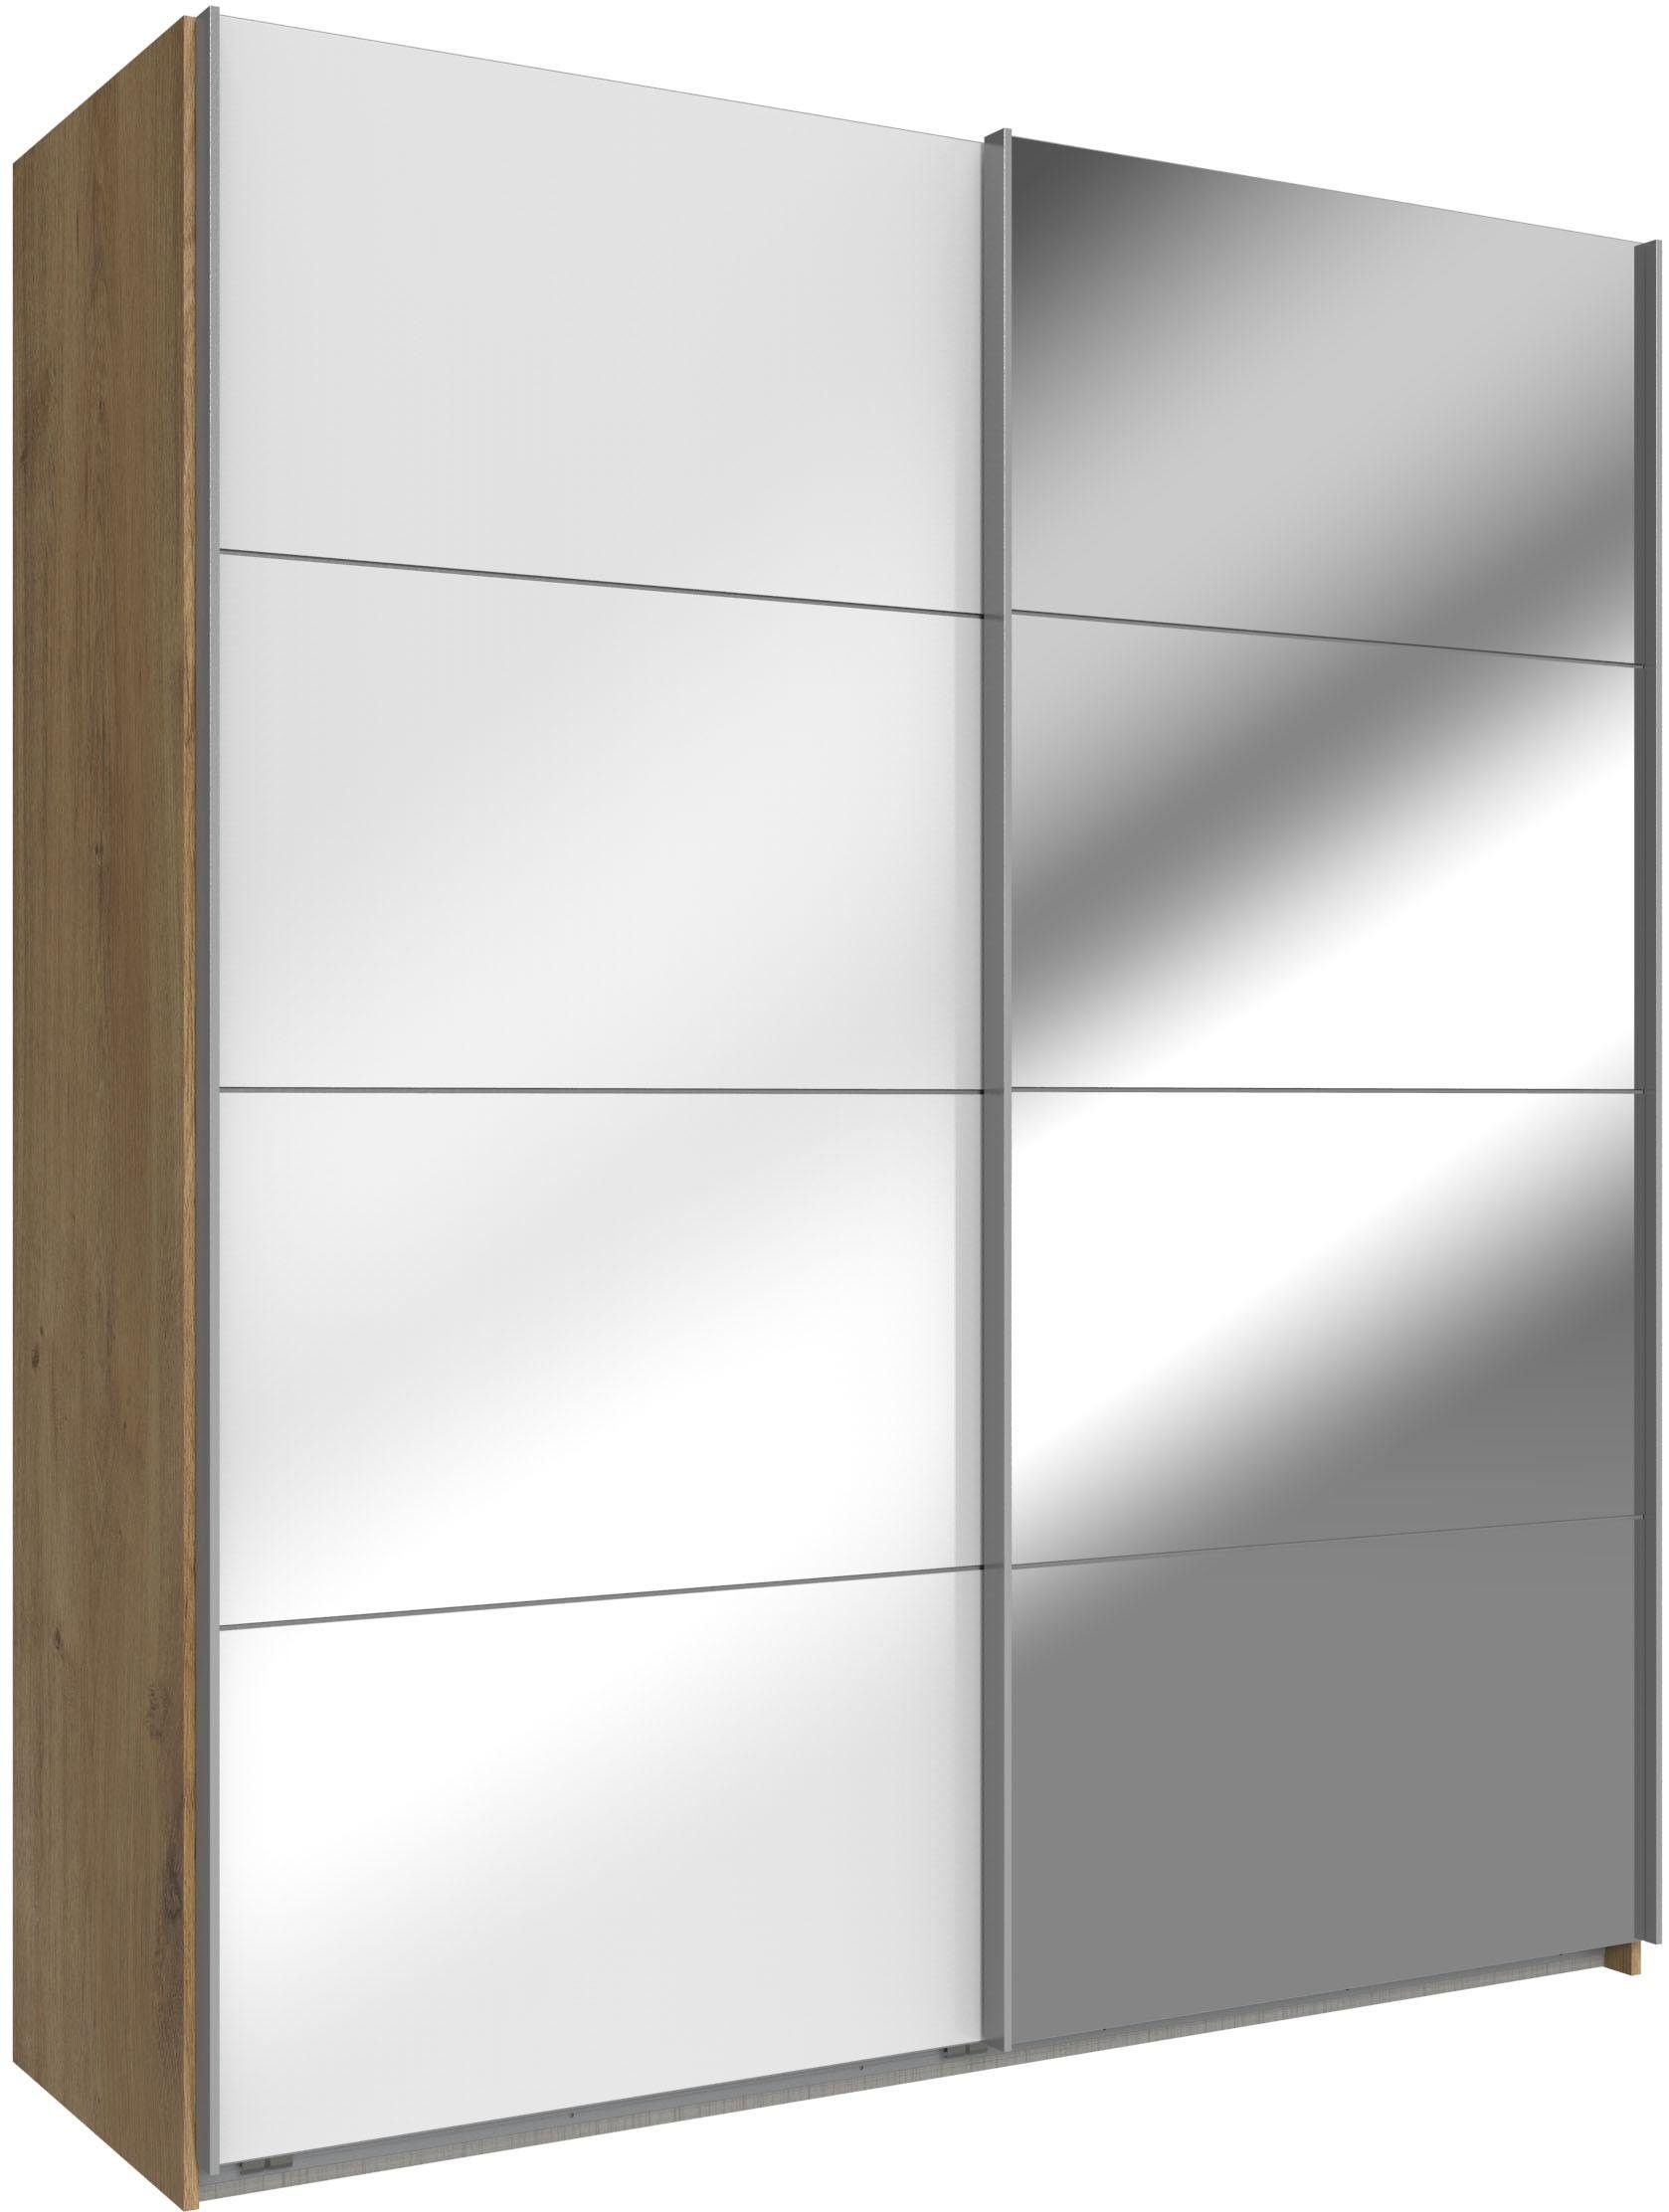 wimex zweefdeurkast easy met glas en spiegel beige